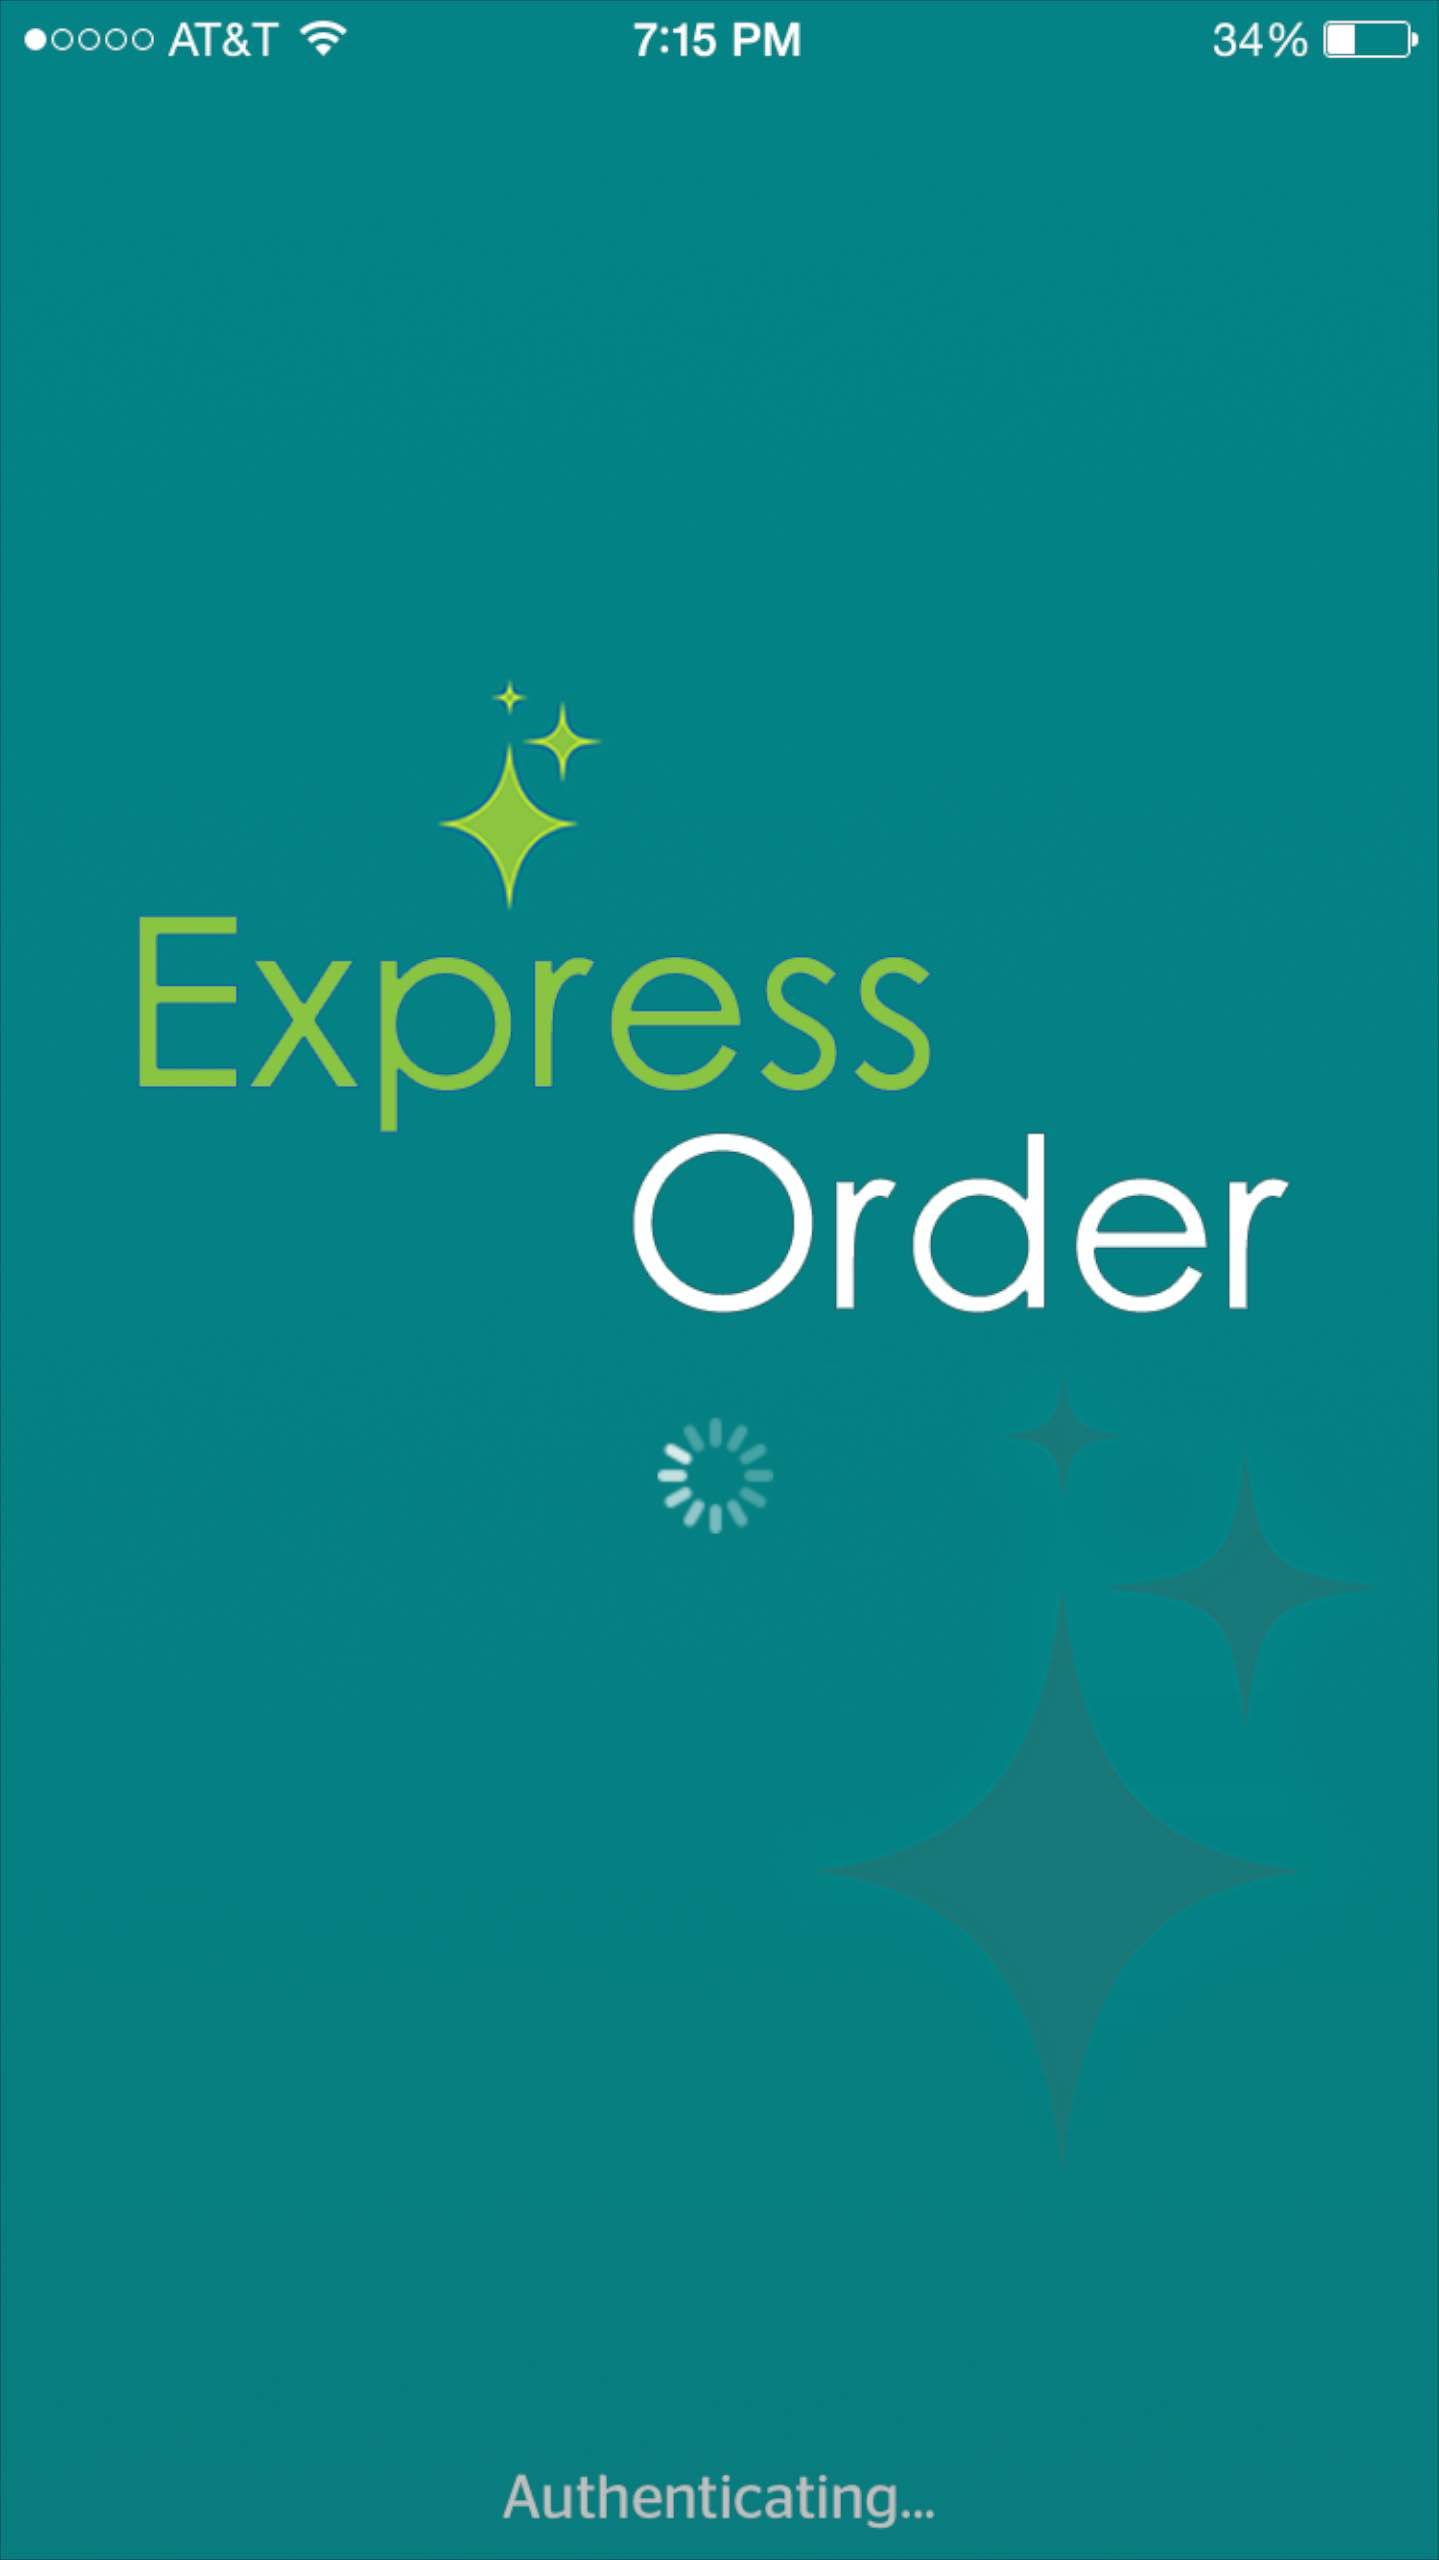 Express Order mobile app